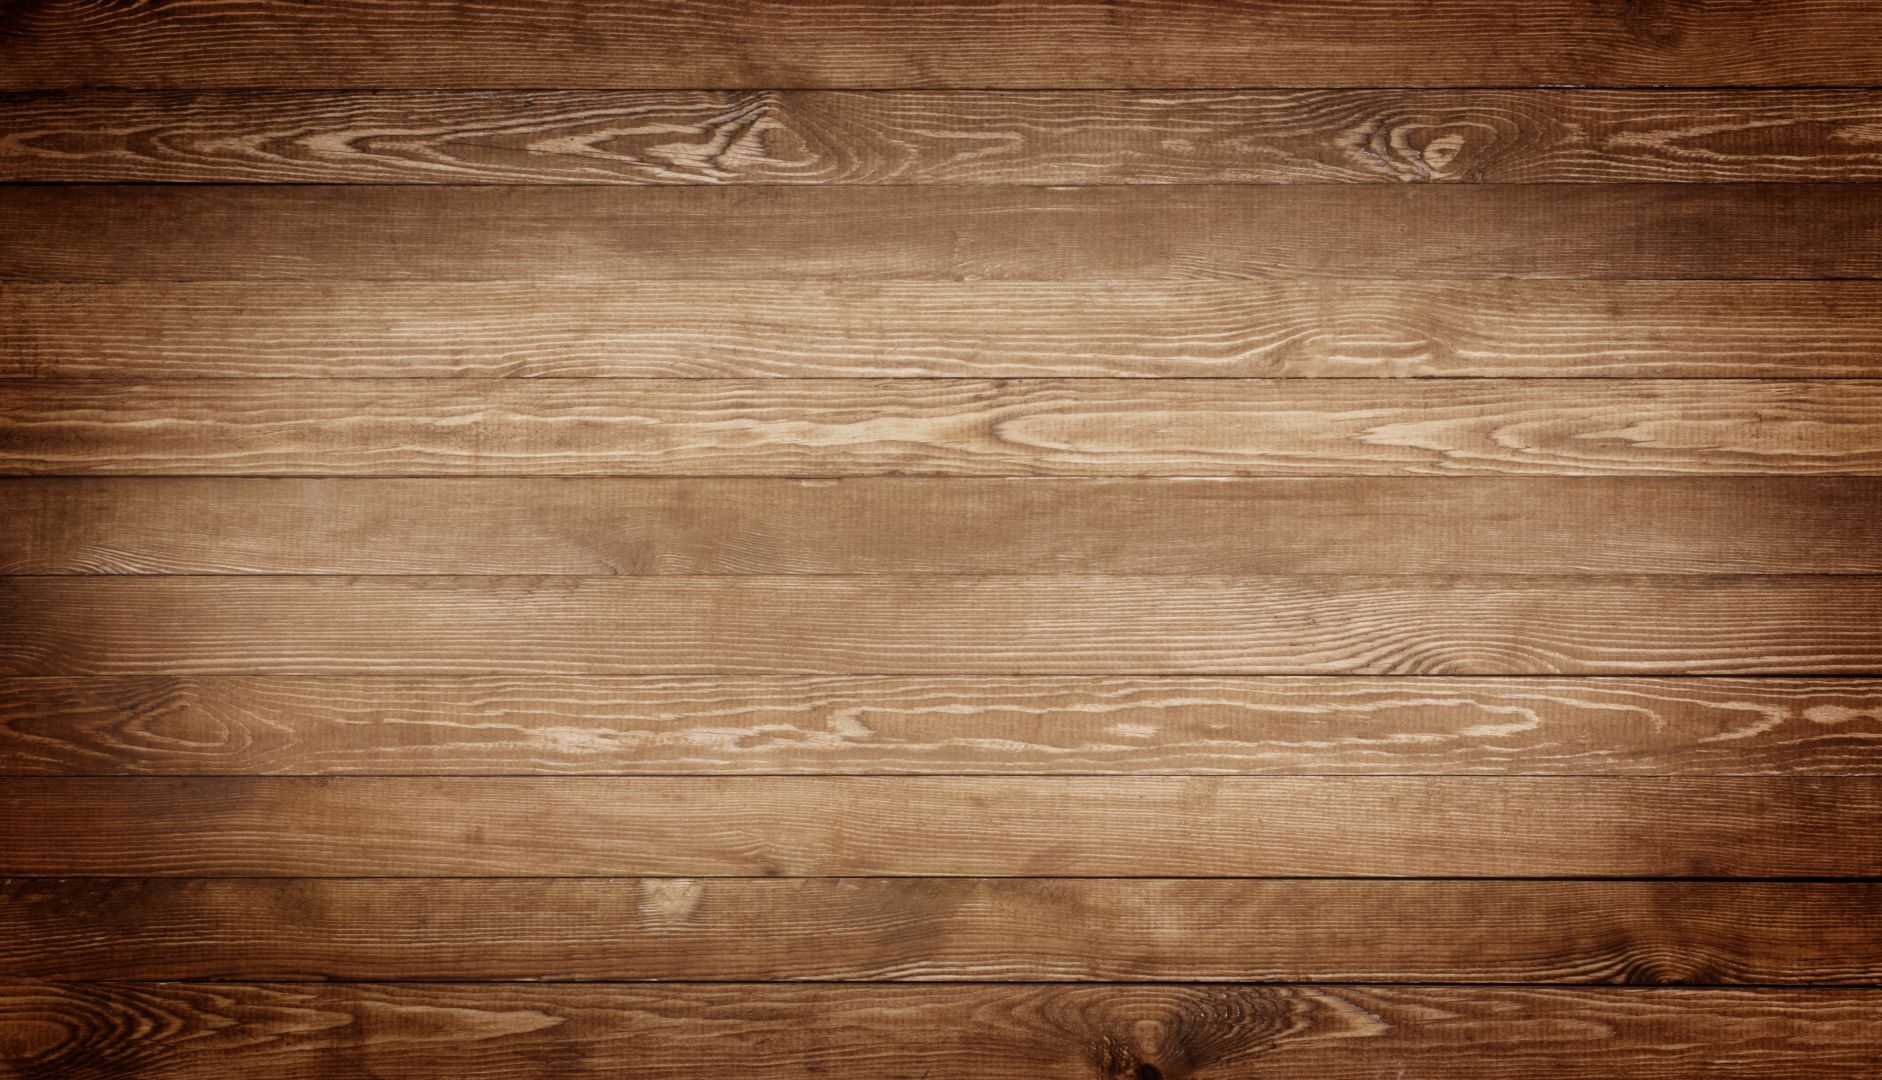 Zakázka na výroba dřevěných stánků (Hotové výrobky) - Karviná